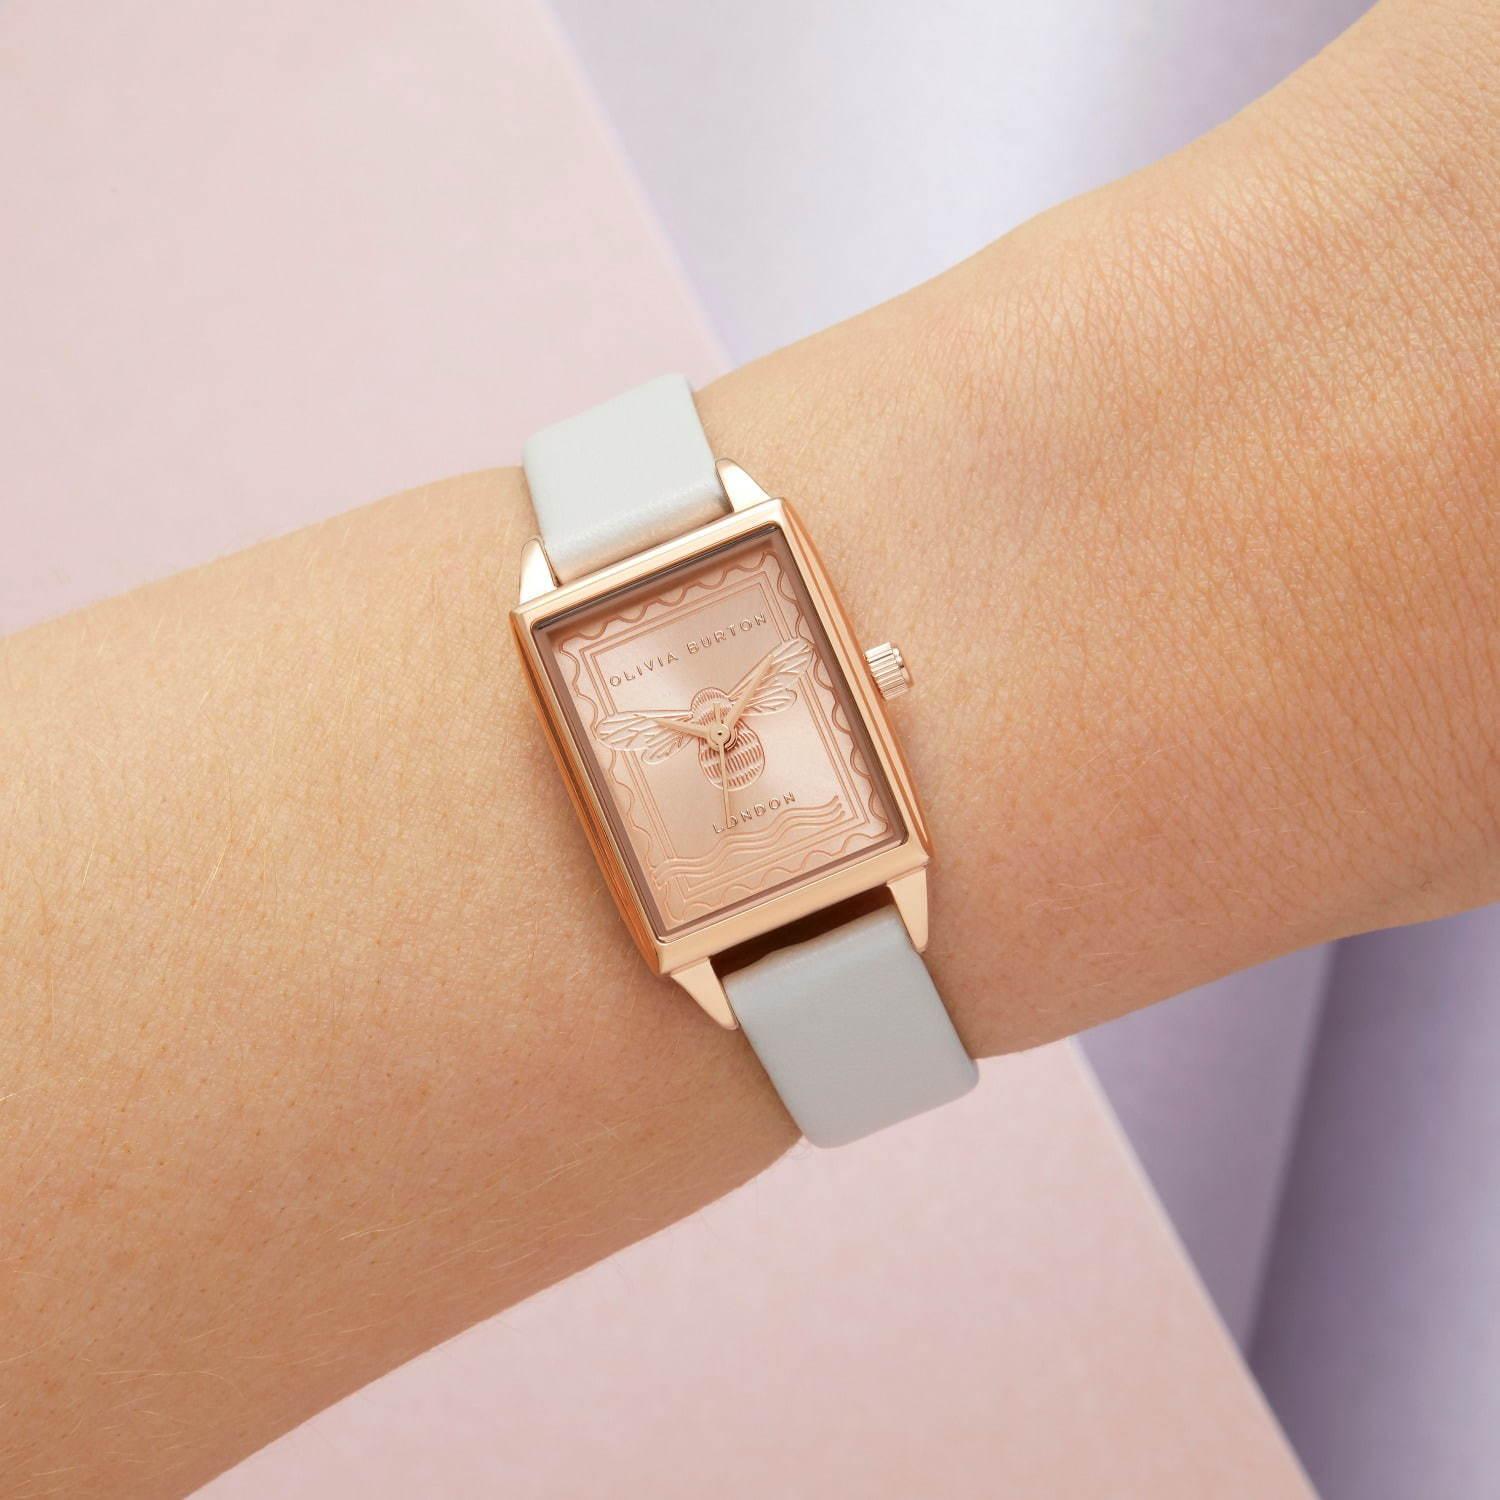 オリビア・バートンの新作“フラワーウォッチ”や切手着想の“ミツバチ”腕時計 コピー